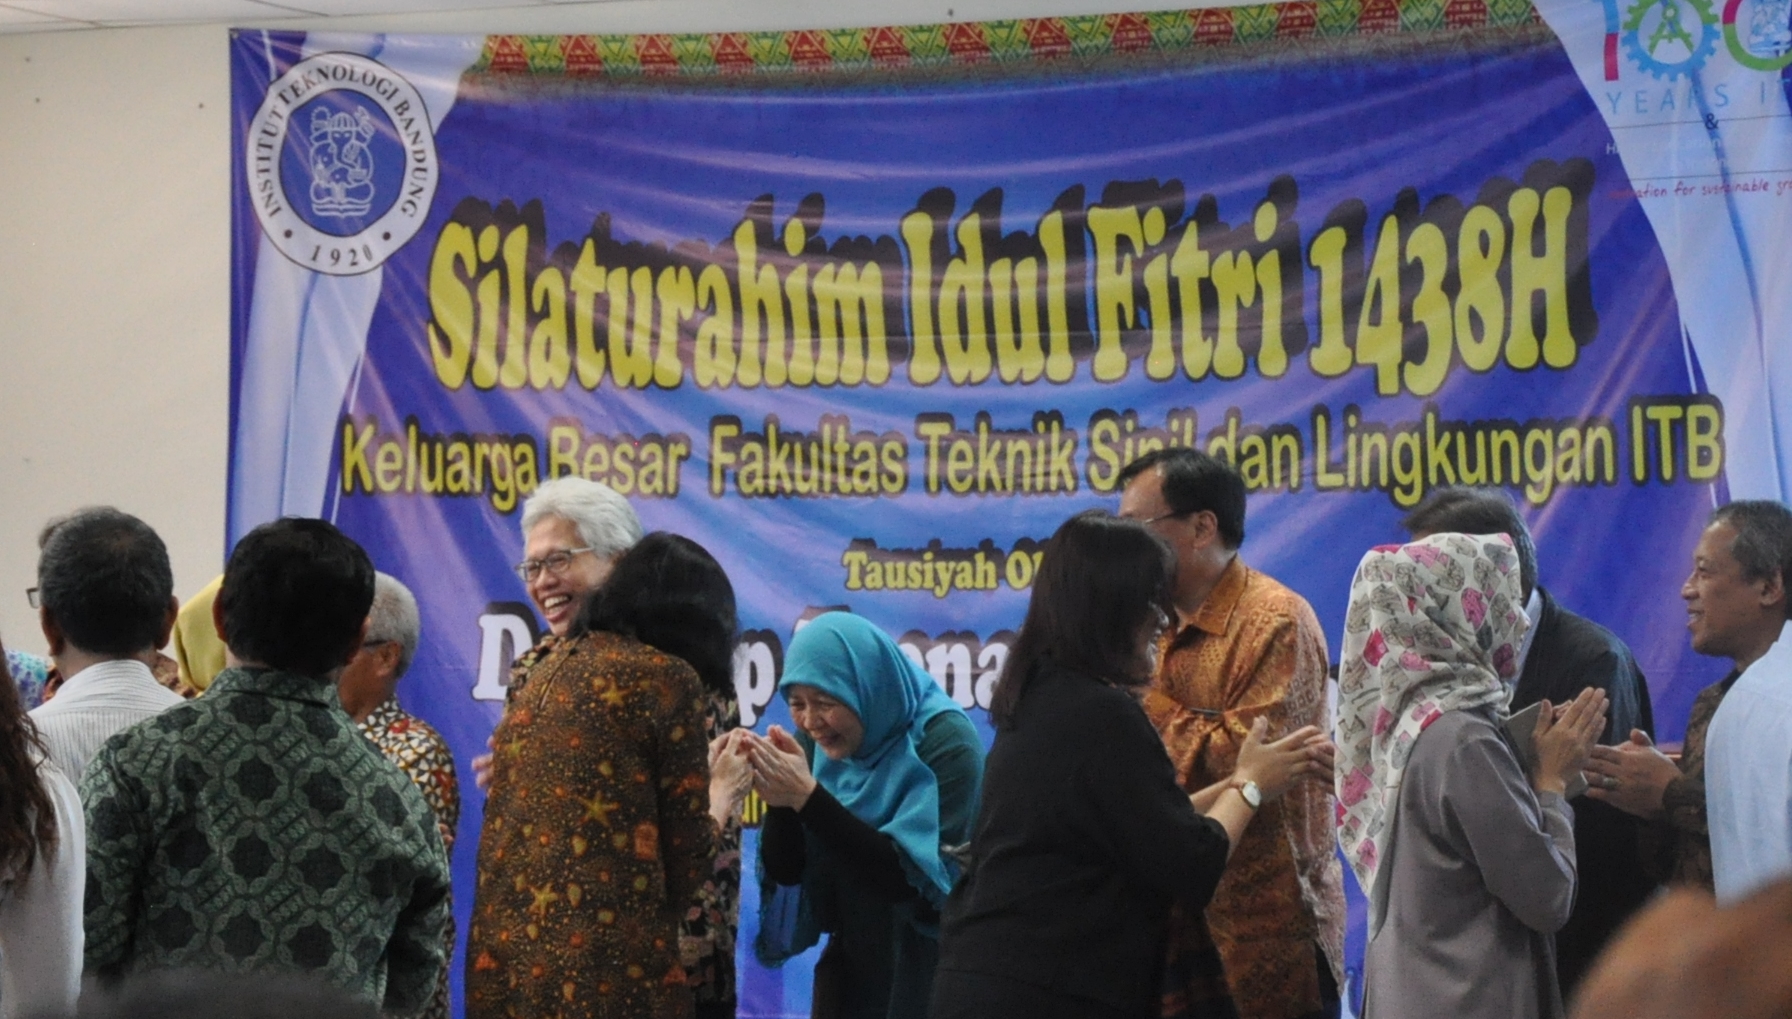 Silaturahim Idul Fitri 1438H Keluarga Besar Fakultas Teknik Sipil dan Lingkungan